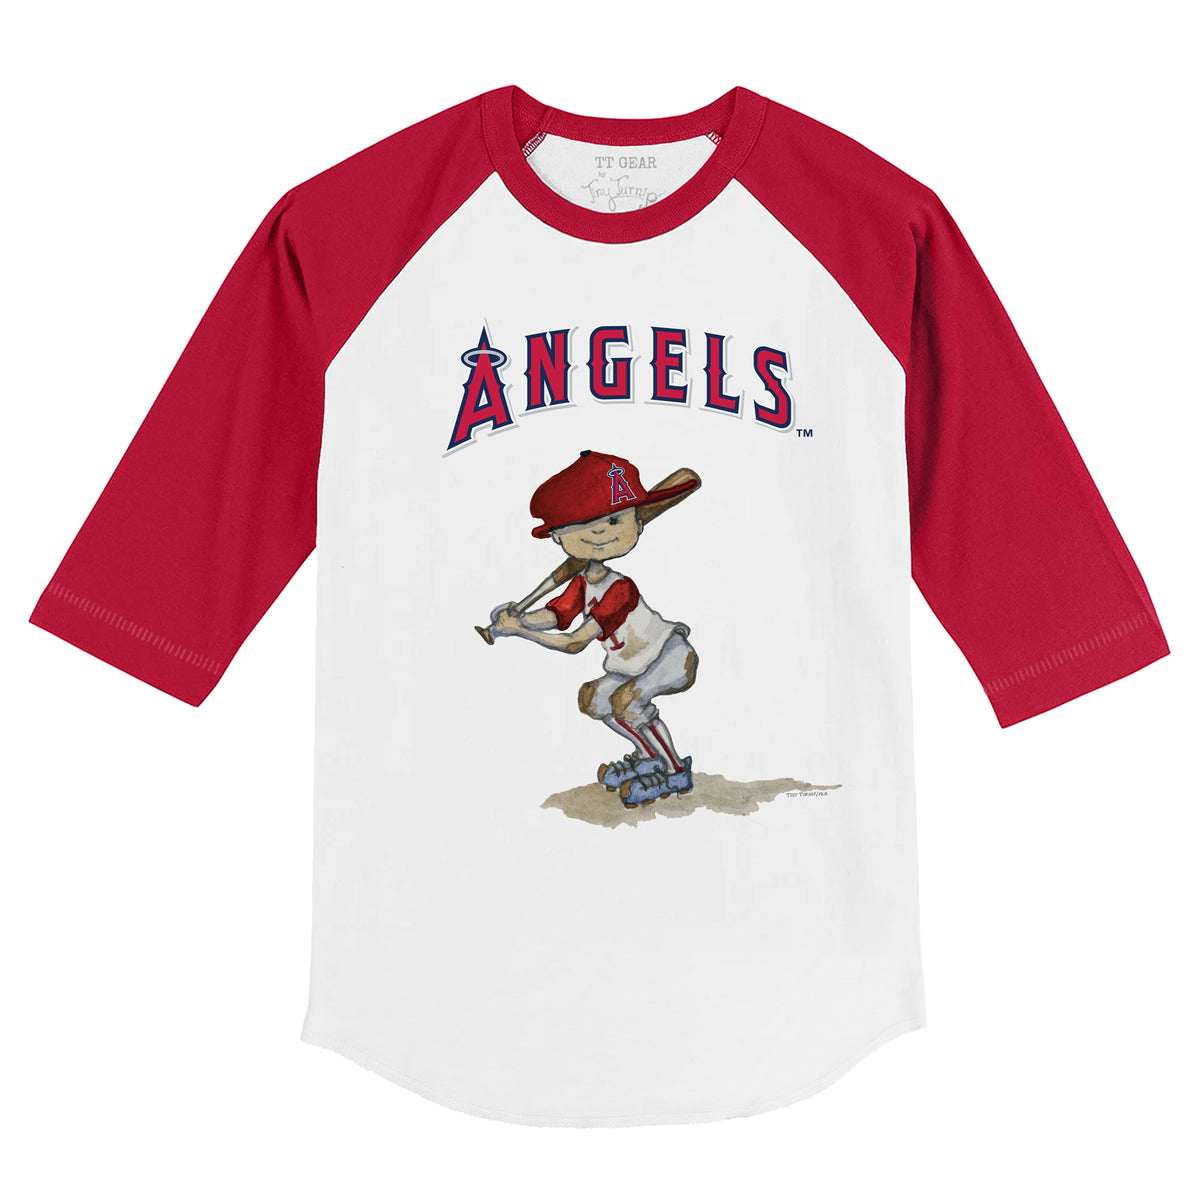 LA Angels kids jerseys